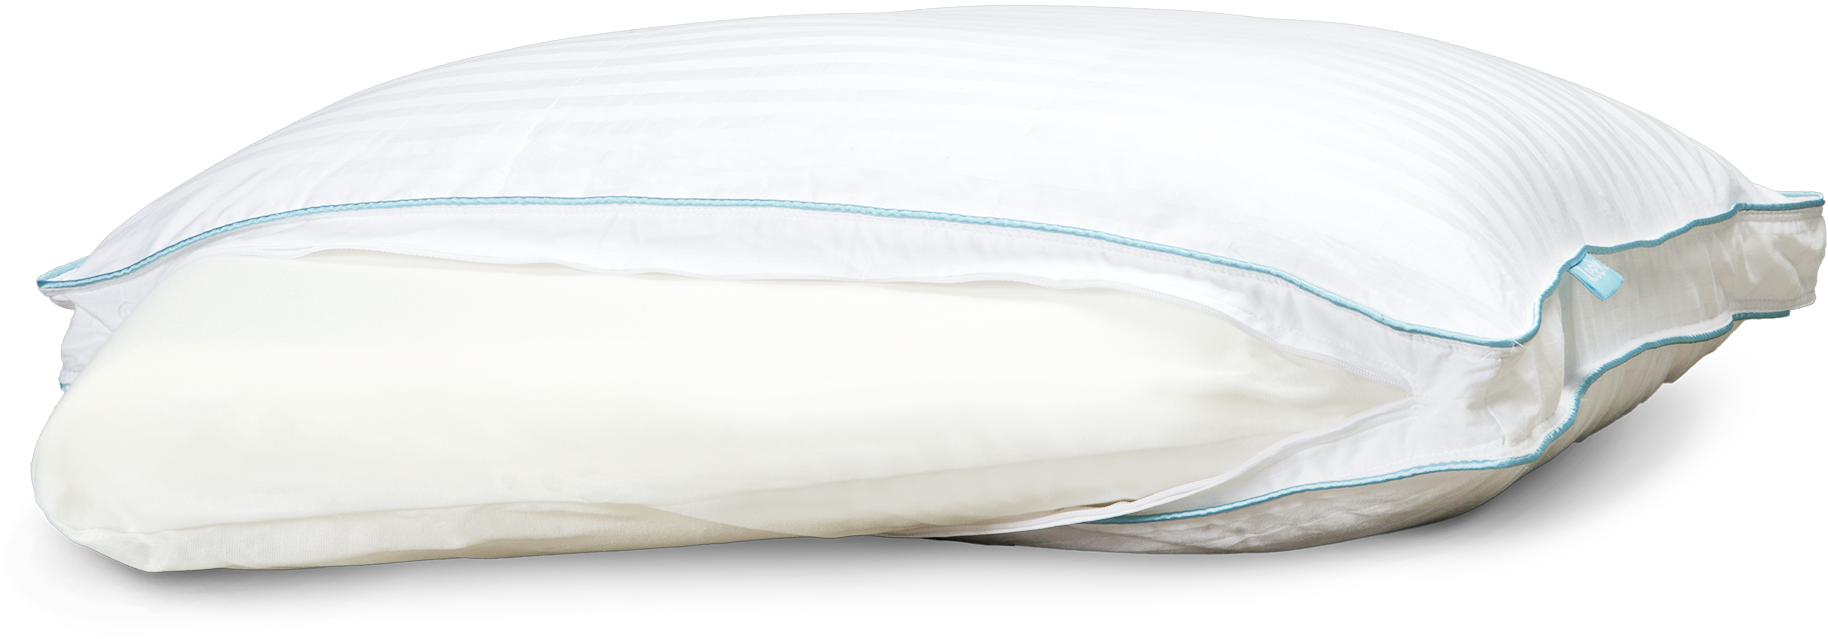 Image of the Zeek Fancy Pillow.